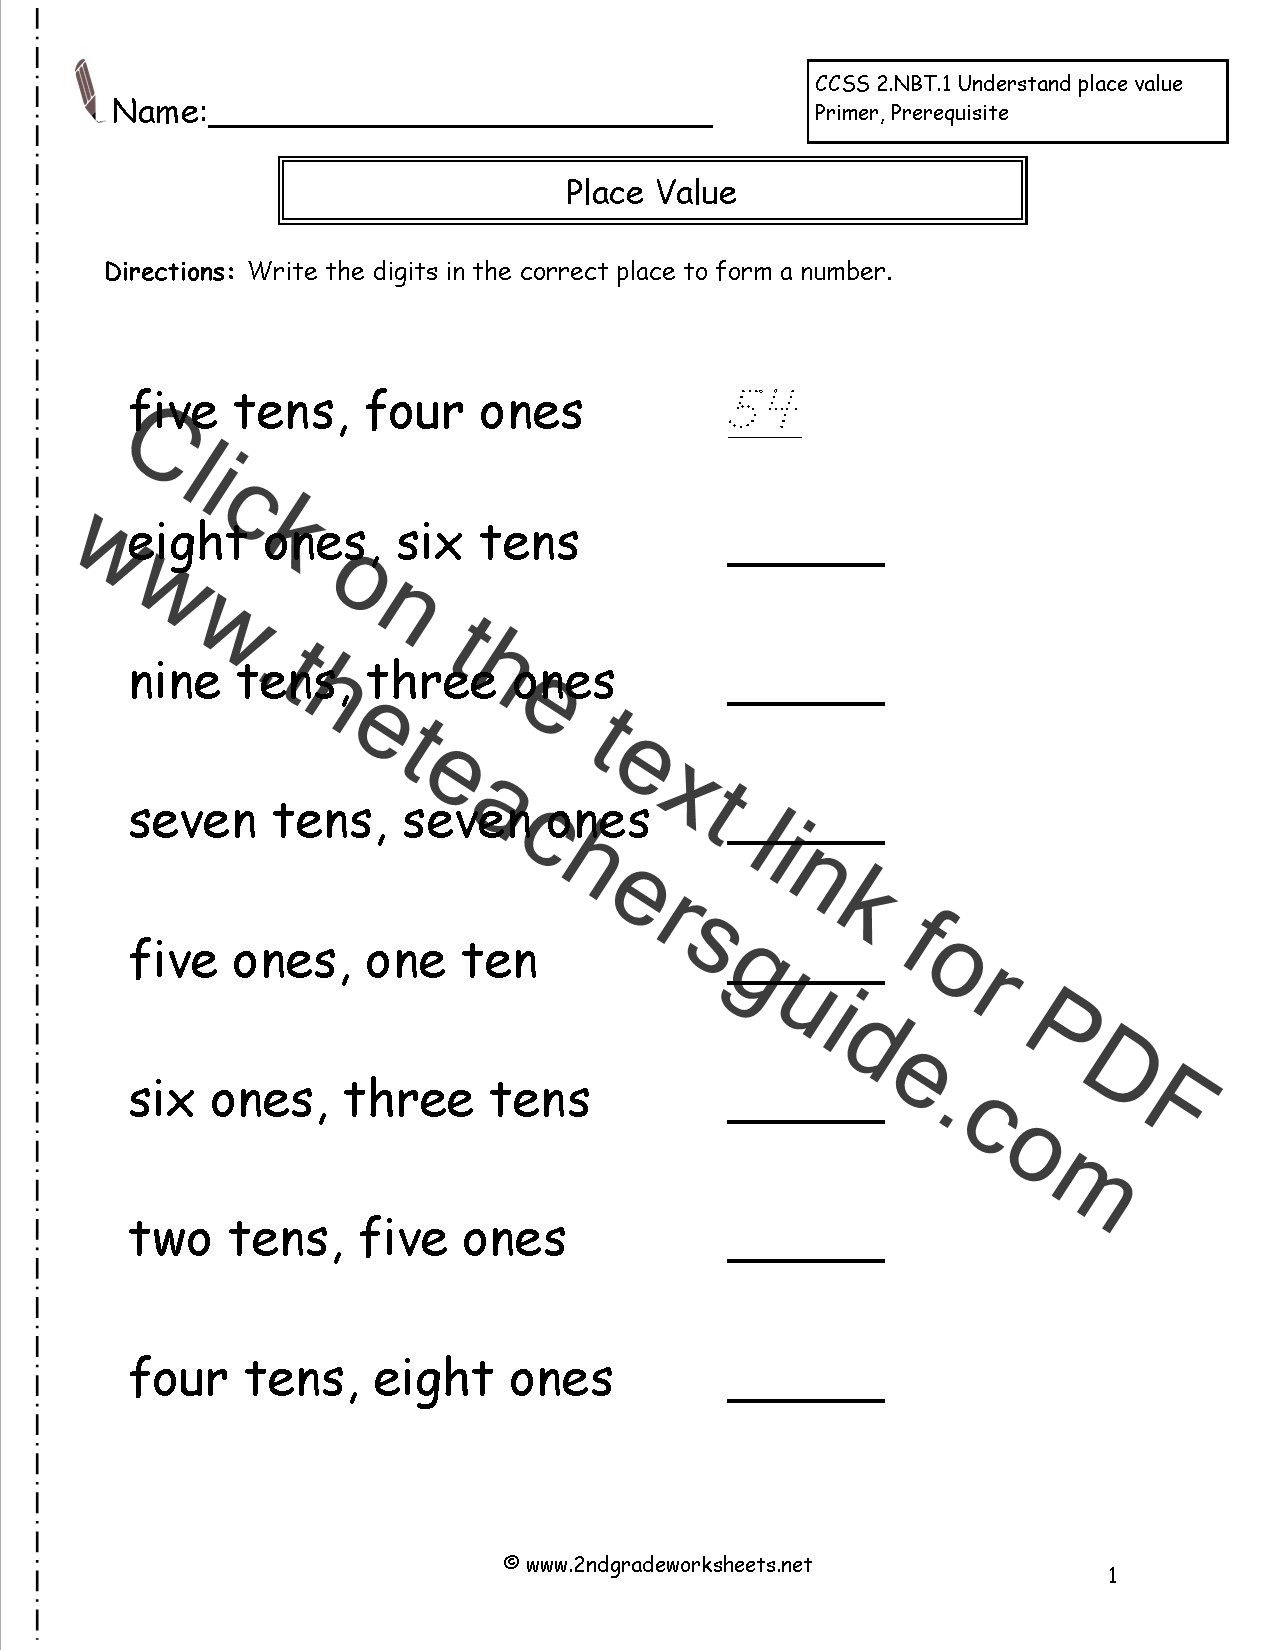 Ones Tens Hundreds Worksheet Second Grade Place Value Worksheets